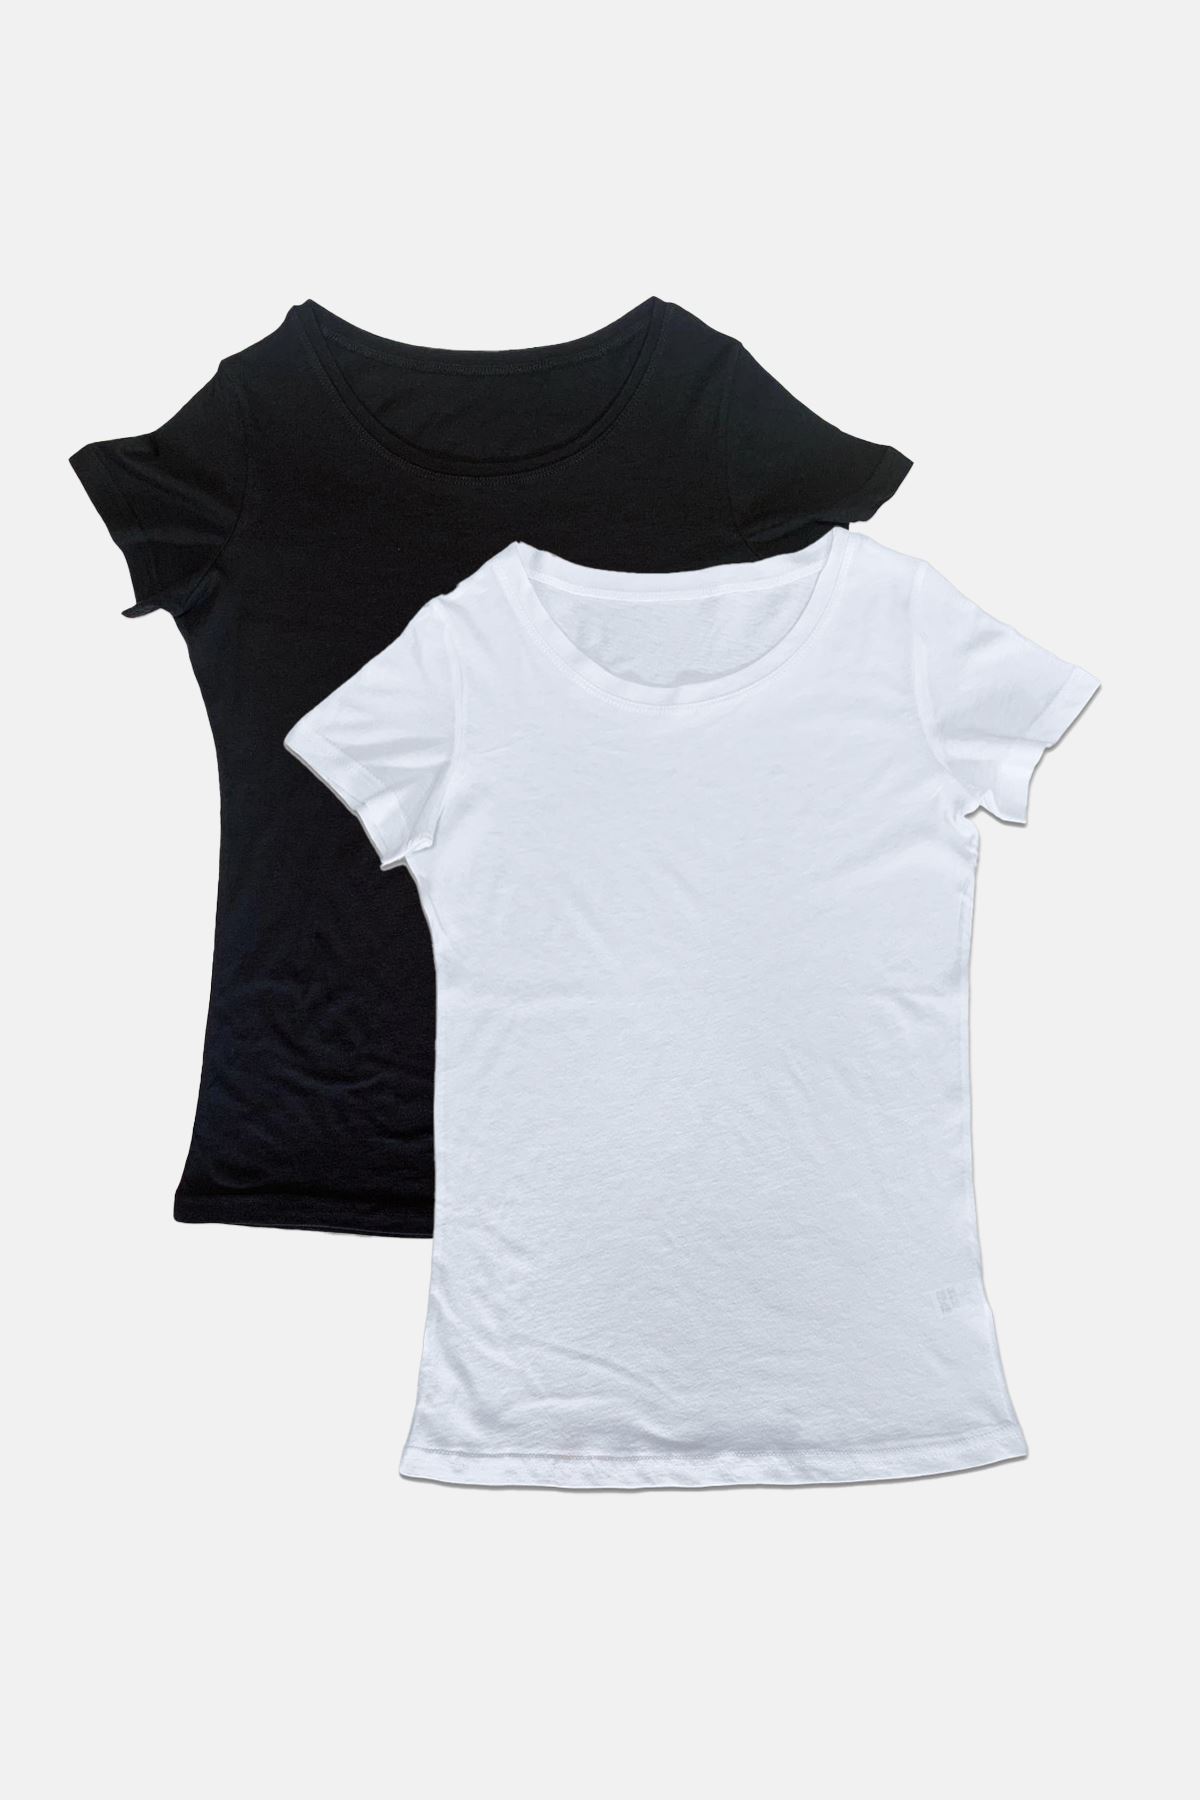 Malabadi Kadın 2 li Paket Siyah-Beyaz Açık Yaka Yaz Serinliği Tişört 2M172 